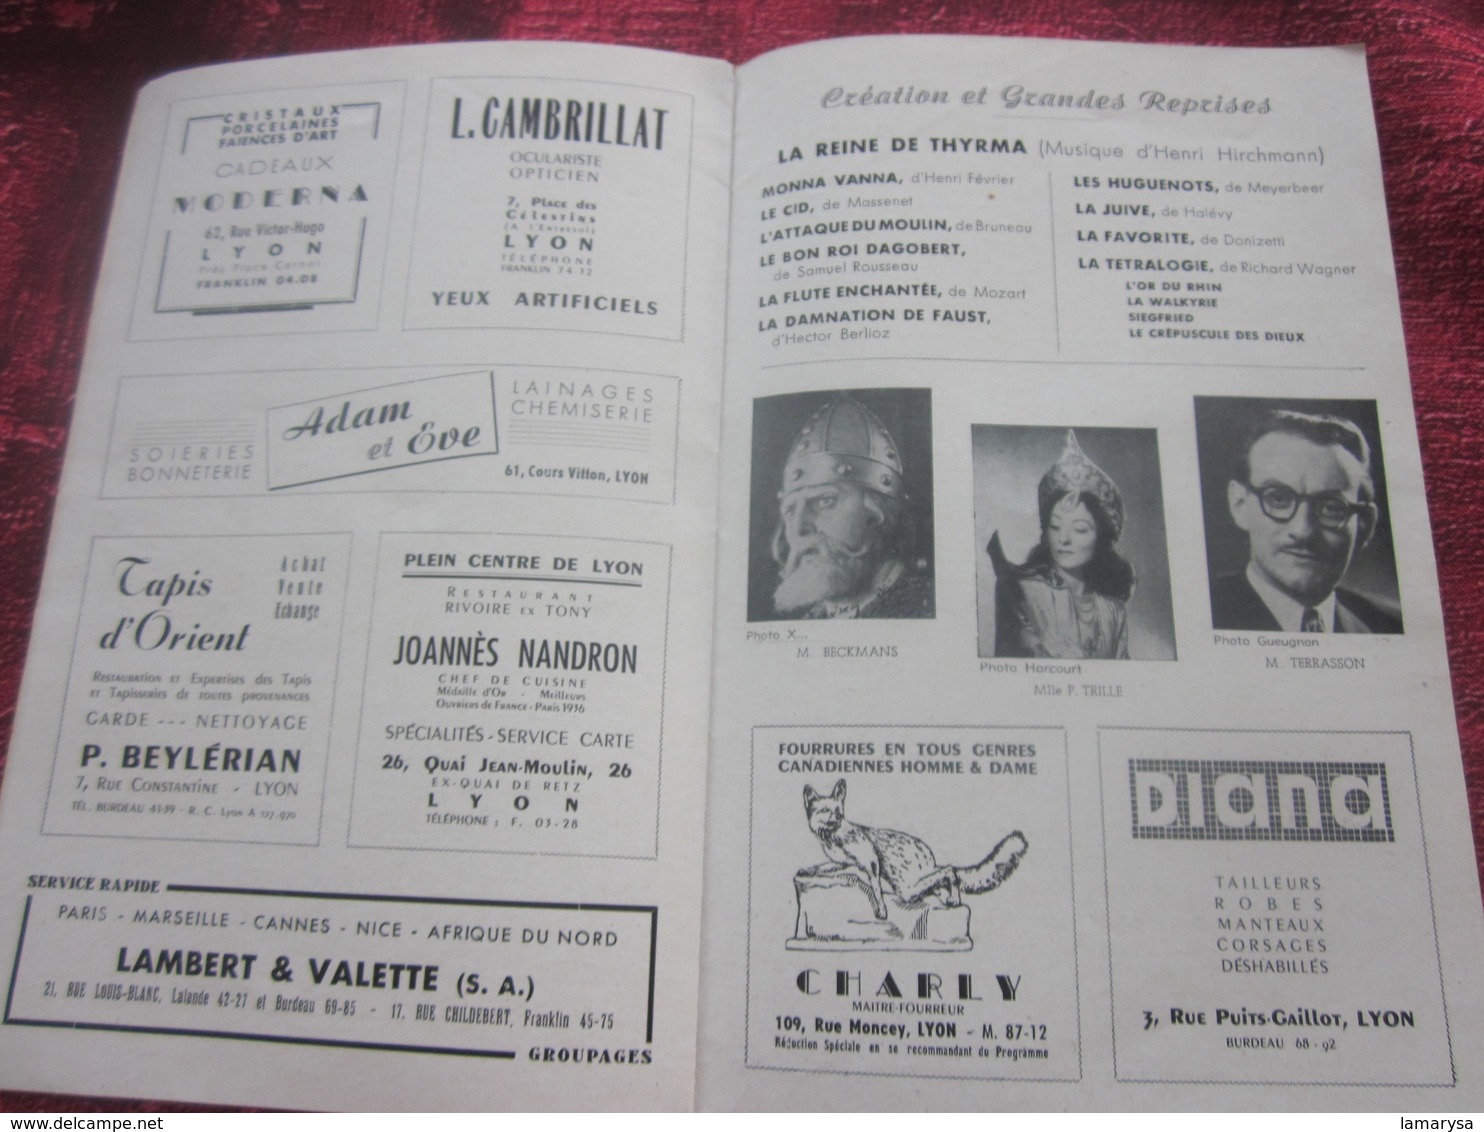 1947/48-TANNHAUSER - LE VENUSBERG -PROGRAMME OPÉRA de LYON-SPECTACLE-PHOTOS ARTISTES COMÉDIENS -ACTEURS-DANSE -PUBLICITÉ